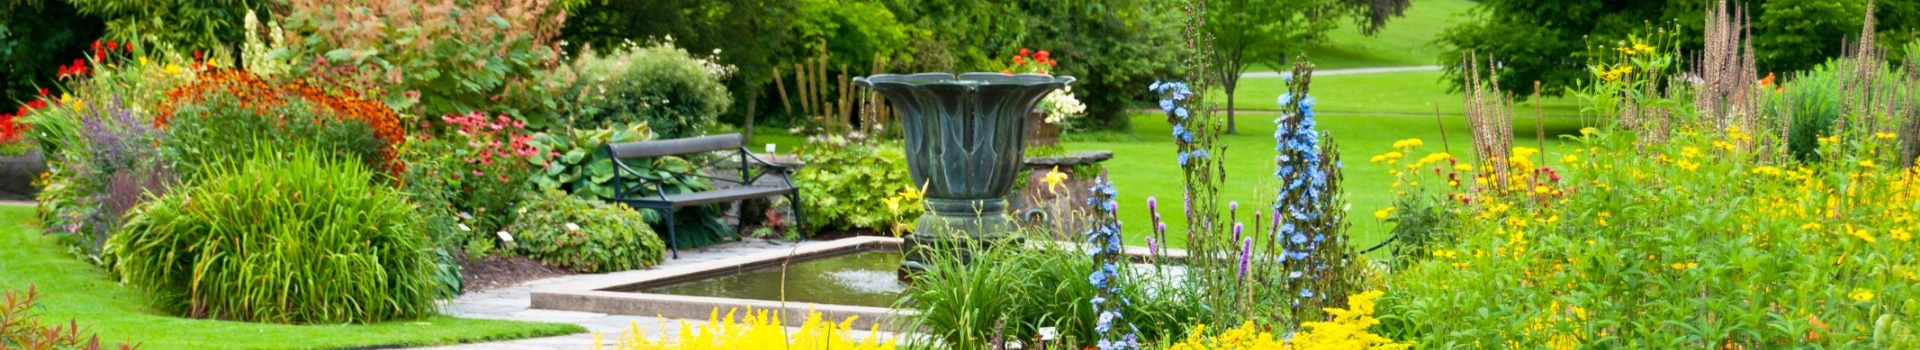 Ogród z fontanną